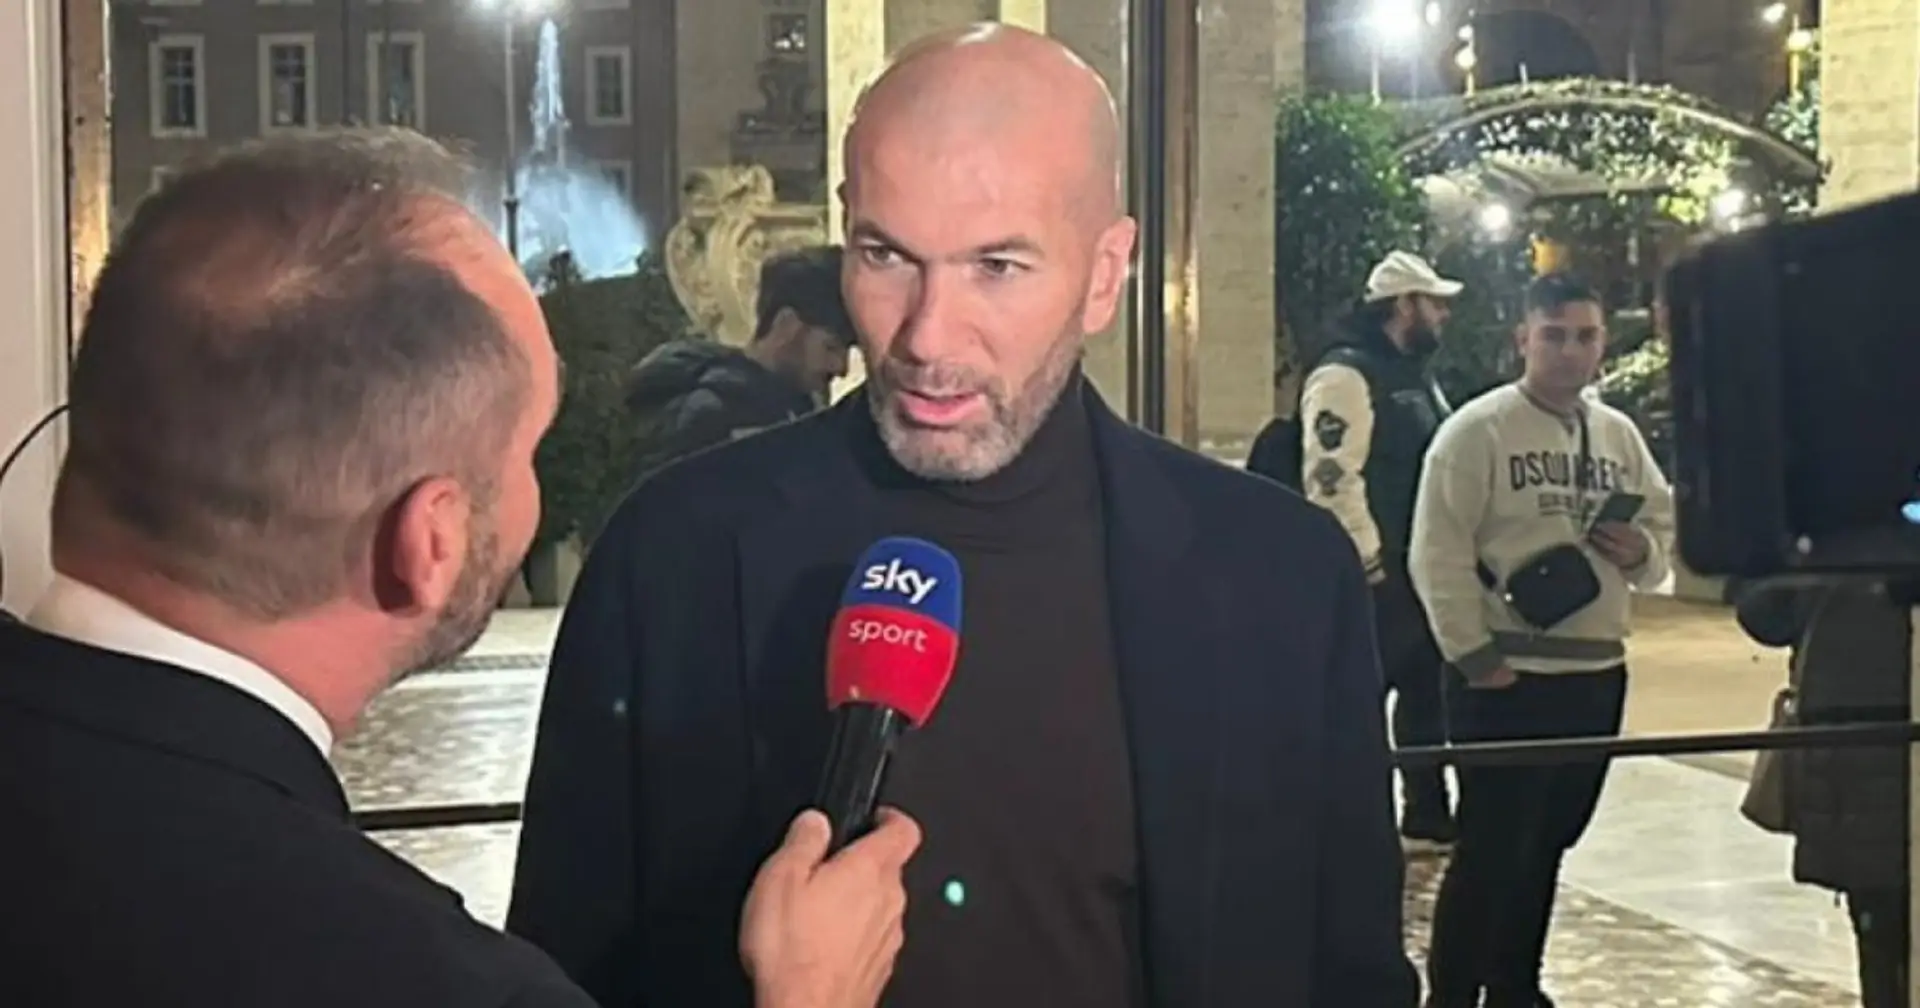 "Futuro in Italia? Perché no!": Zidane parla di futuro ed esalta Marcello Lippi